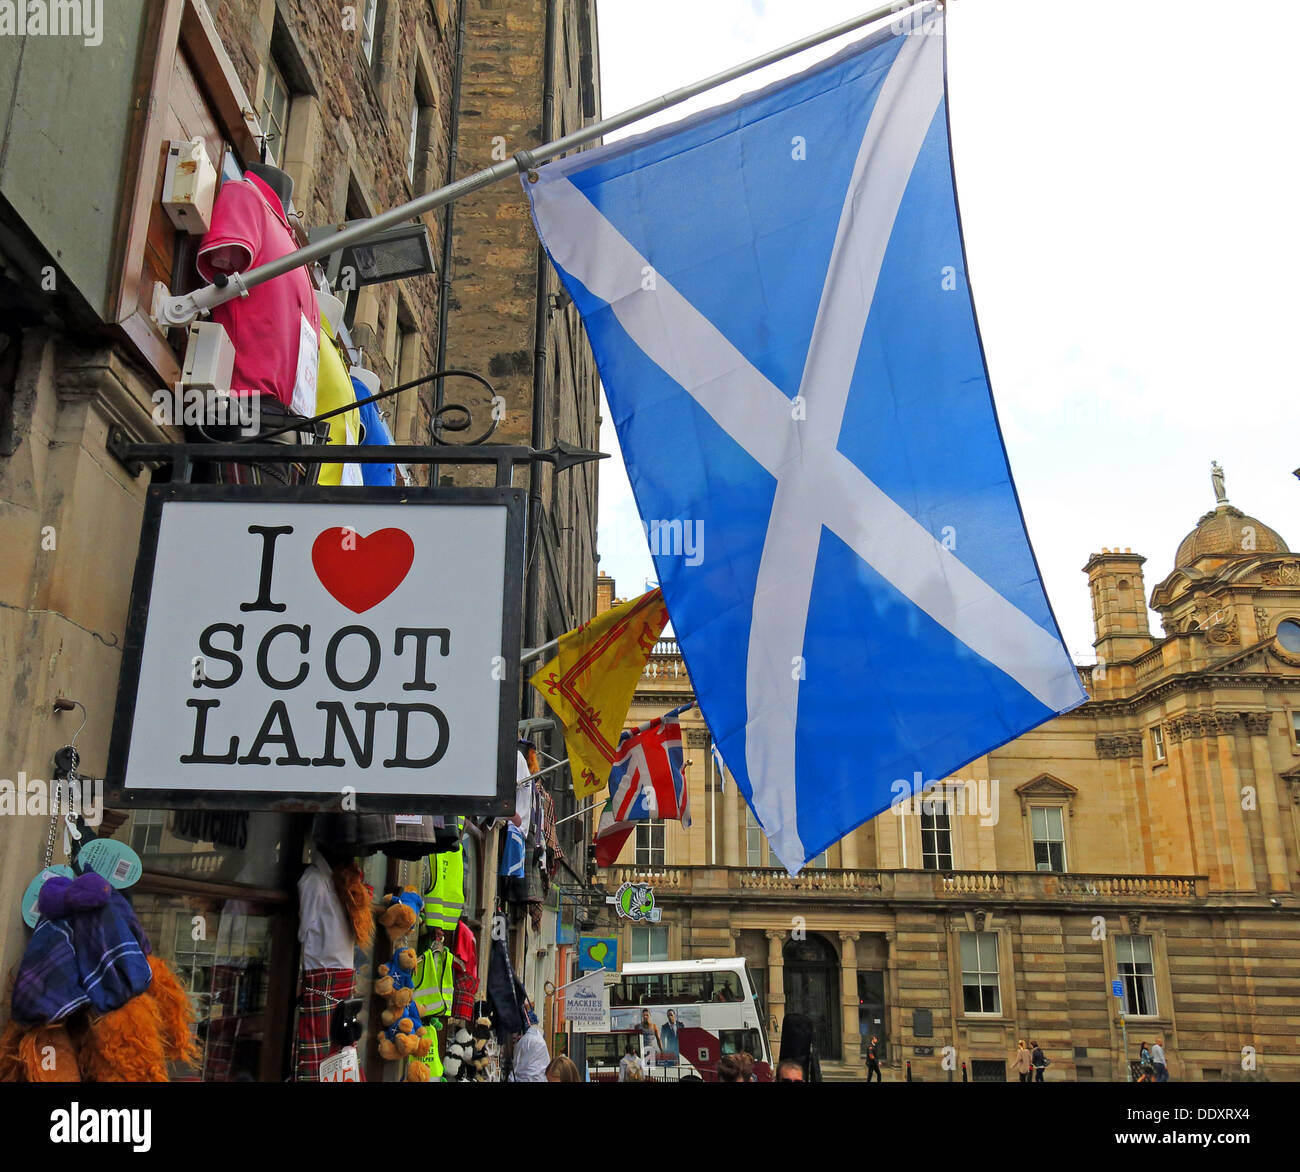 Ich liebe Scot Land shop Edinburgh Schottland Großbritannien mit Schottischer Flagge saltire weißes Kreuz auf blauem Hintergrund Stockfoto